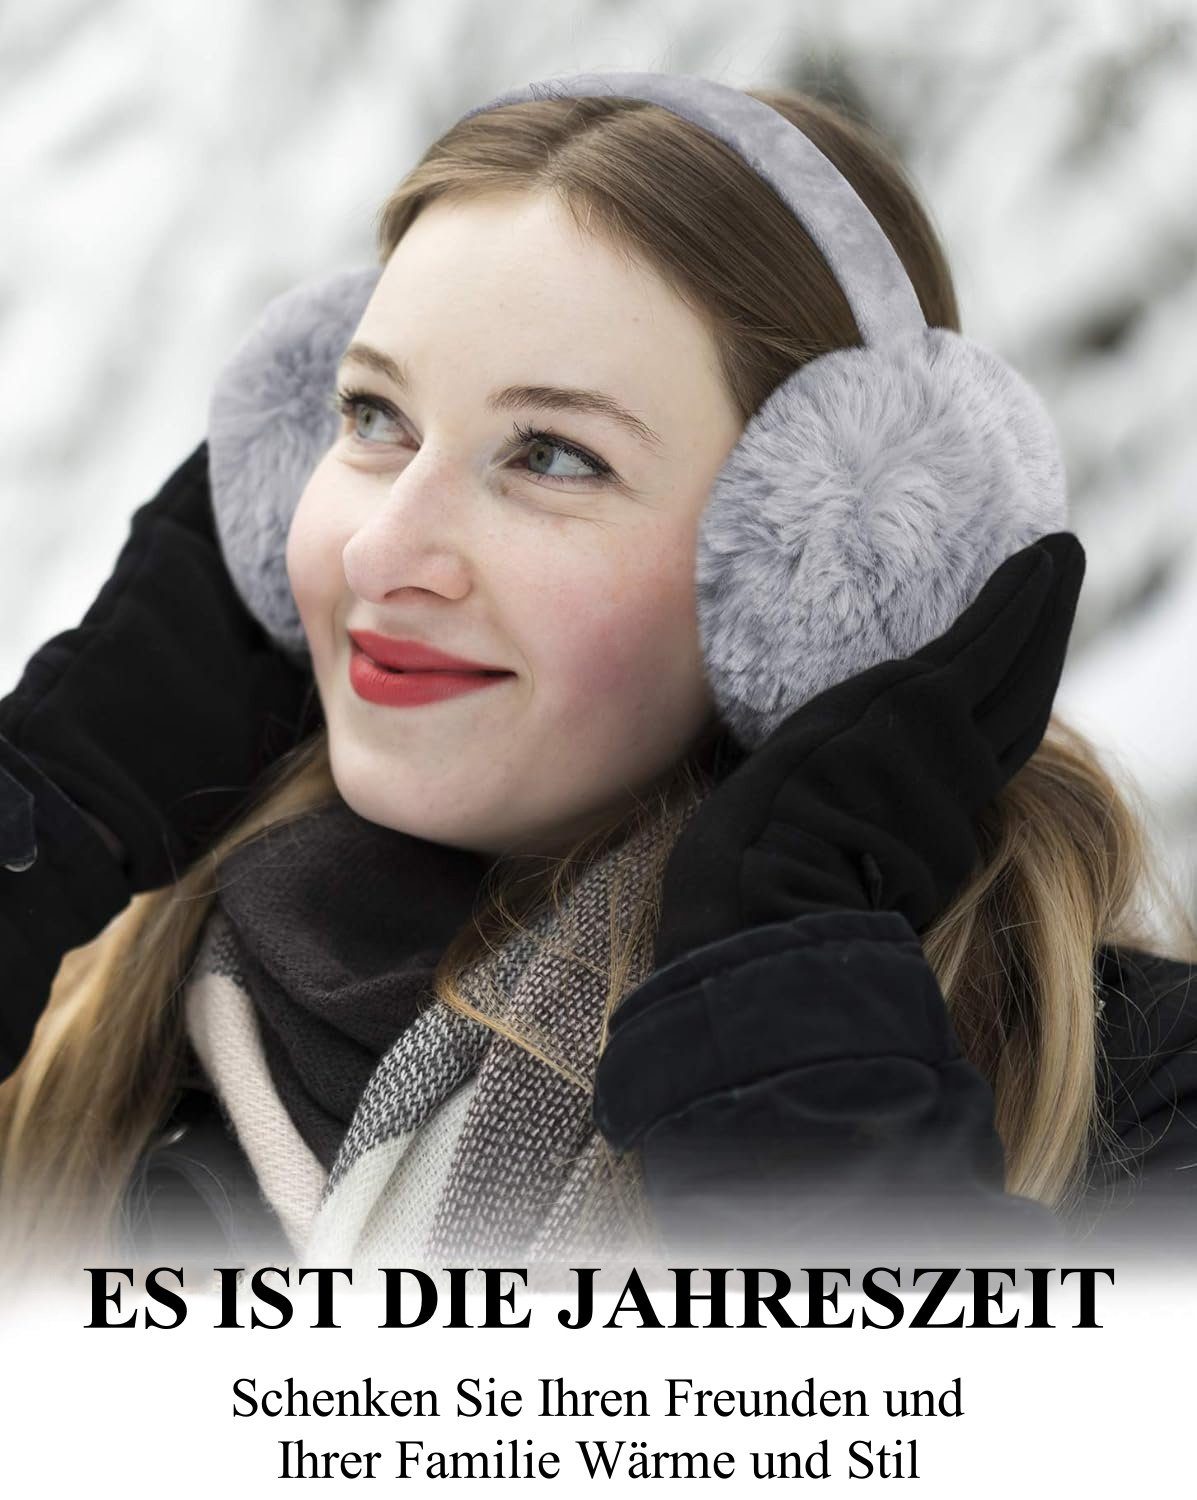 Ohrenwärmer für kaltes Grau Opspring Wetter Ohrenschützer,Winter-Ohrenwärmer,Ohrenschützer